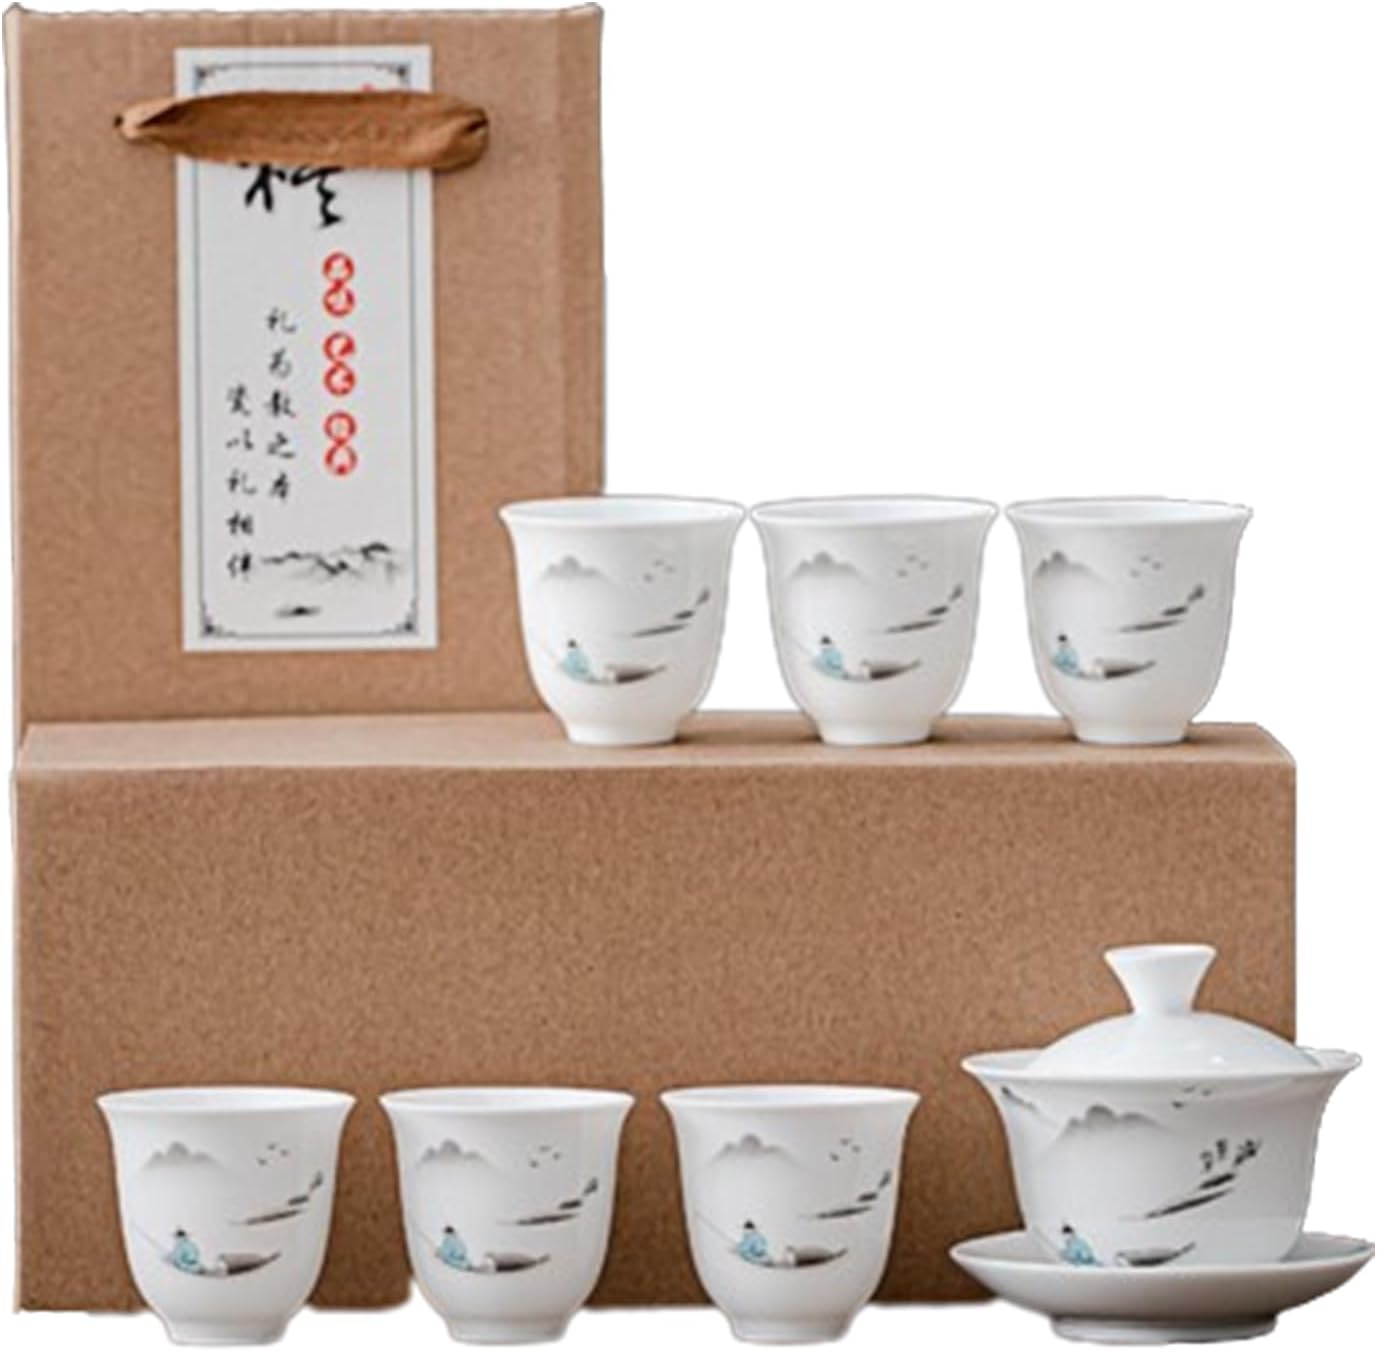 　　　 ◆◇◆売れている秘密◆◇◆ 1.素材：セラミックス 2.セット内容：デザイン1:1つふた付きの茶碗+カップ4つ、デザイン2:1つふた付きの茶+カップ6つ、デザイン3:1つふた付きの茶+カップ4つ、デザイン4:1つふた付きの茶碗+カップ6つ，ギフトボックス包装，友達を送るのにぴったりです 3.本格的なお茶気分：本格的な中国茶気分が味わえる急須セットです。香りが移りにくいため、紅茶だけでなく緑茶や中国茶など種類の違うお茶を楽しめるのも魅力です。あらゆるお茶に使える万能な急須セットを探している方におすすめです。 4.理想的な贈り物：ホーム、オフィス、ホリデーギフト、ウェディングギフト、誕生日、クリスマス、感謝祭、記念日などに大活躍！家族、友人や同僚のための理想的な贈り物、お茶で友達に会い、知己に贈るのにおすすめです。 5.安心サポート：出荷する前に、厳しい検査を行っておりますので、商品品質にご安心ください。万が一、初期不良・トラブル・ご質問などがございましたら、お気軽にお問い合わせください 　　　◆◇◆注意事項◆◇◆ご覧のモニターの環境、撮影環境により実物と色味が異なって見える場合がございます。湿った状態で他のものと擦り合わせると色が移る恐れがあります。濃色品の洗濯時は、白色、淡色と分けて洗ってください。説明 123